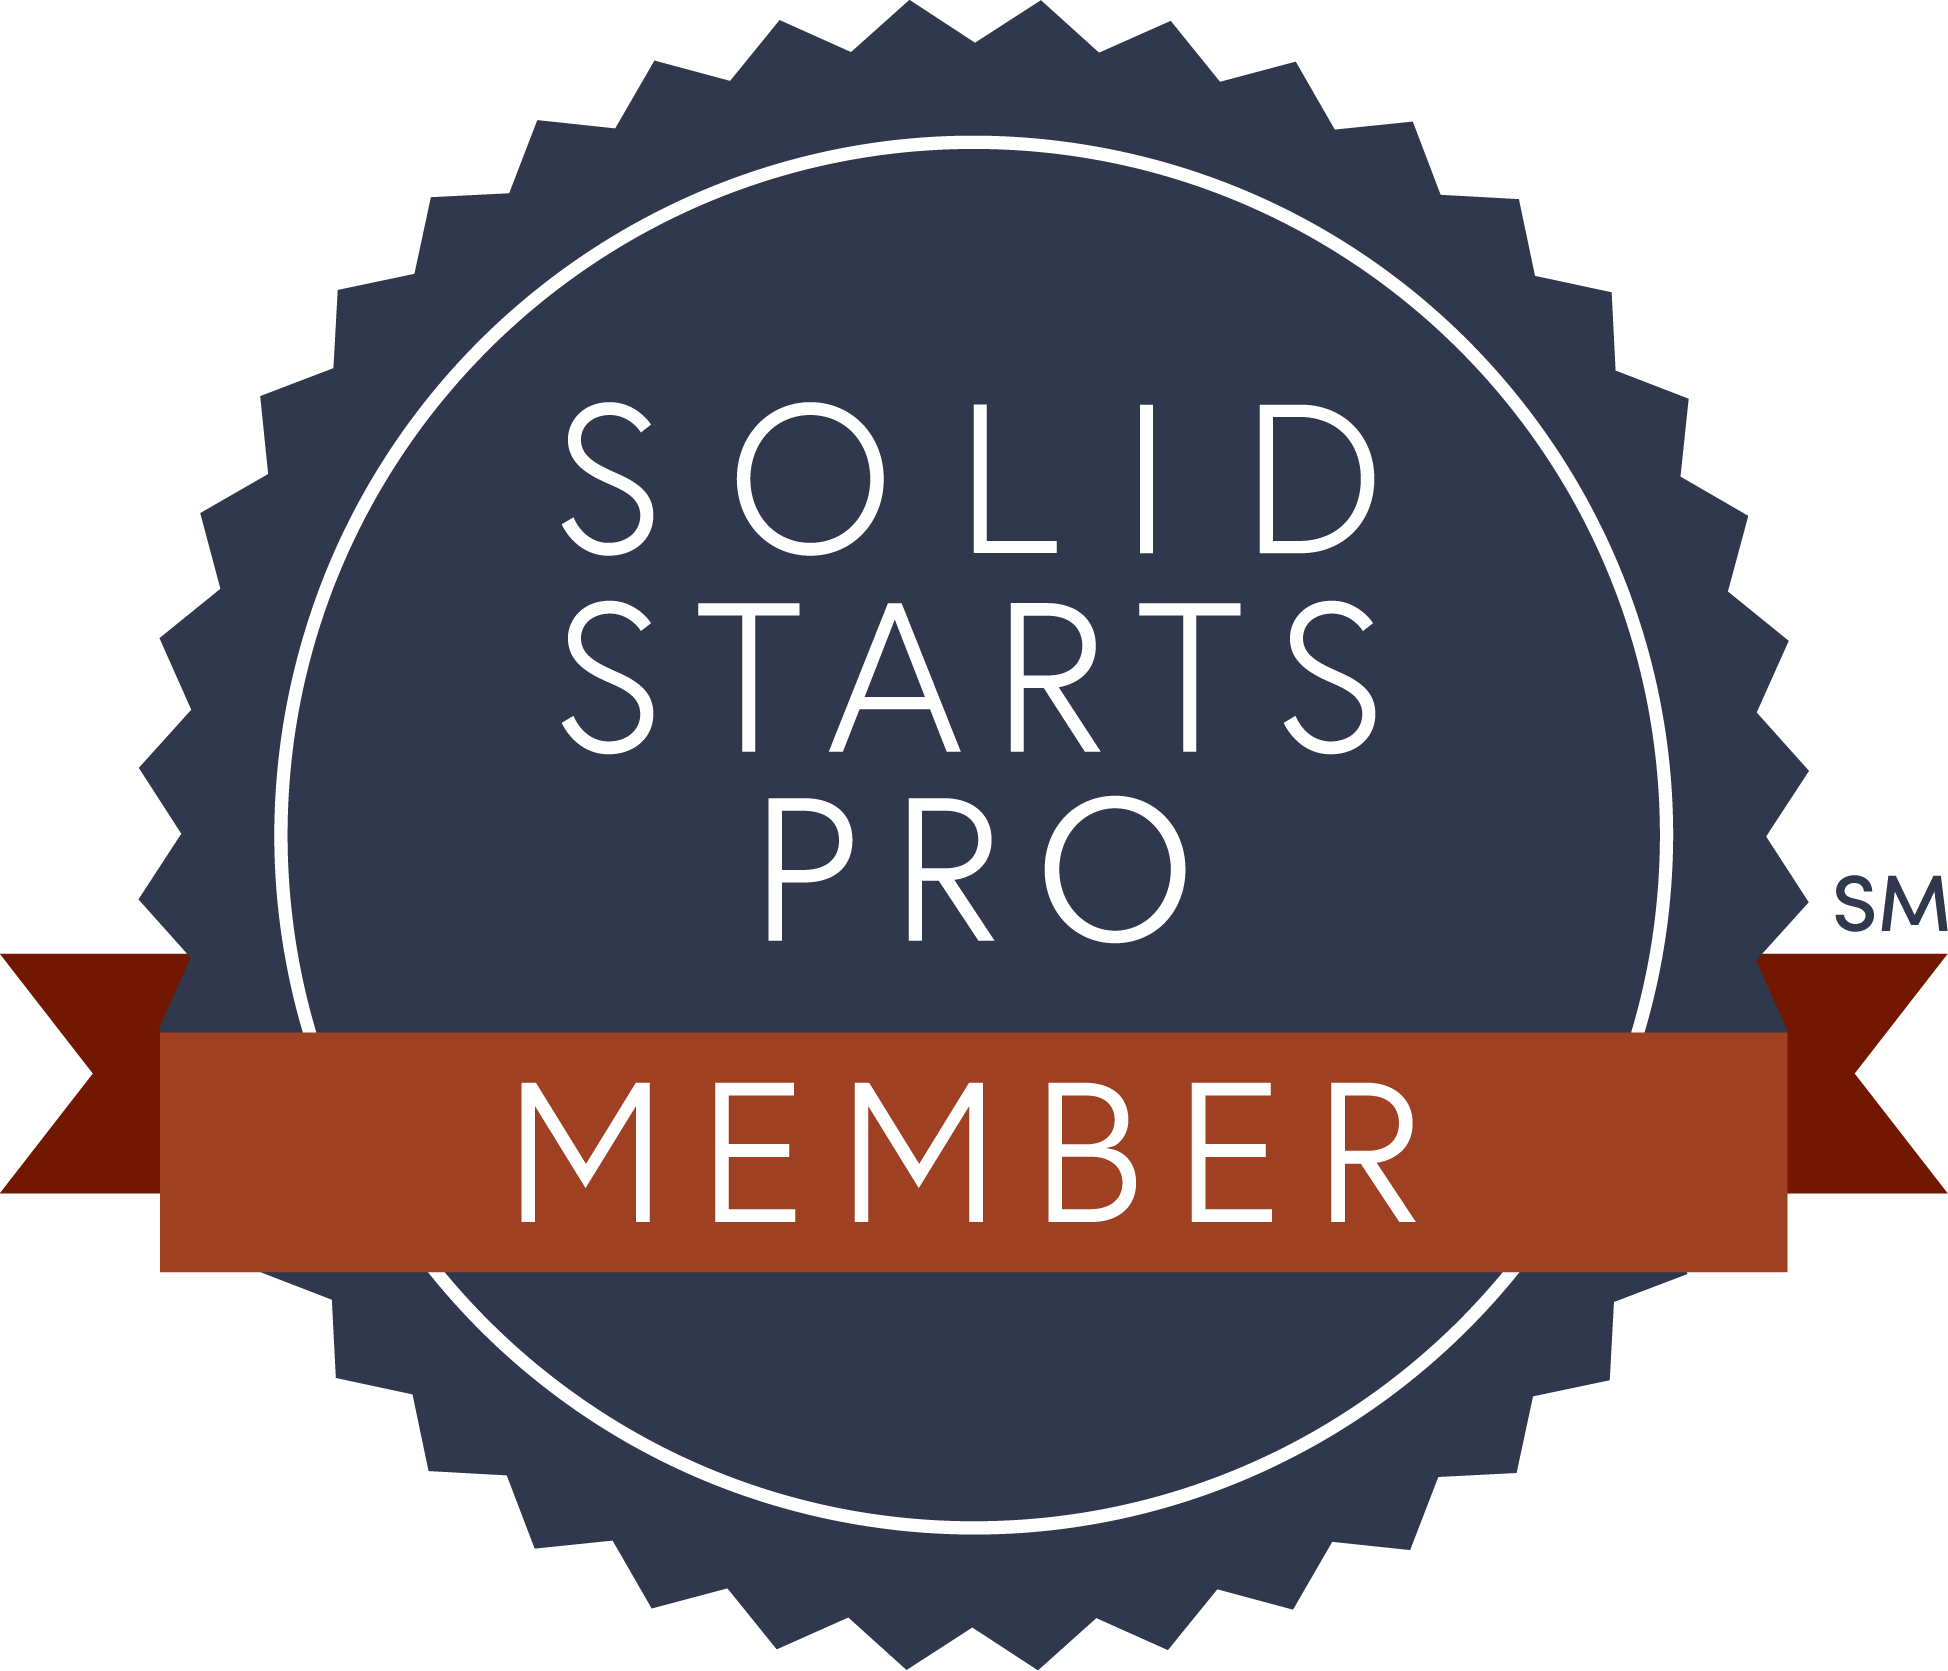 Solid_Starts_Pro_Member_Badge_SM_1-3458a6e1-8ad1-470a-b6d2-3504b97d8292.png